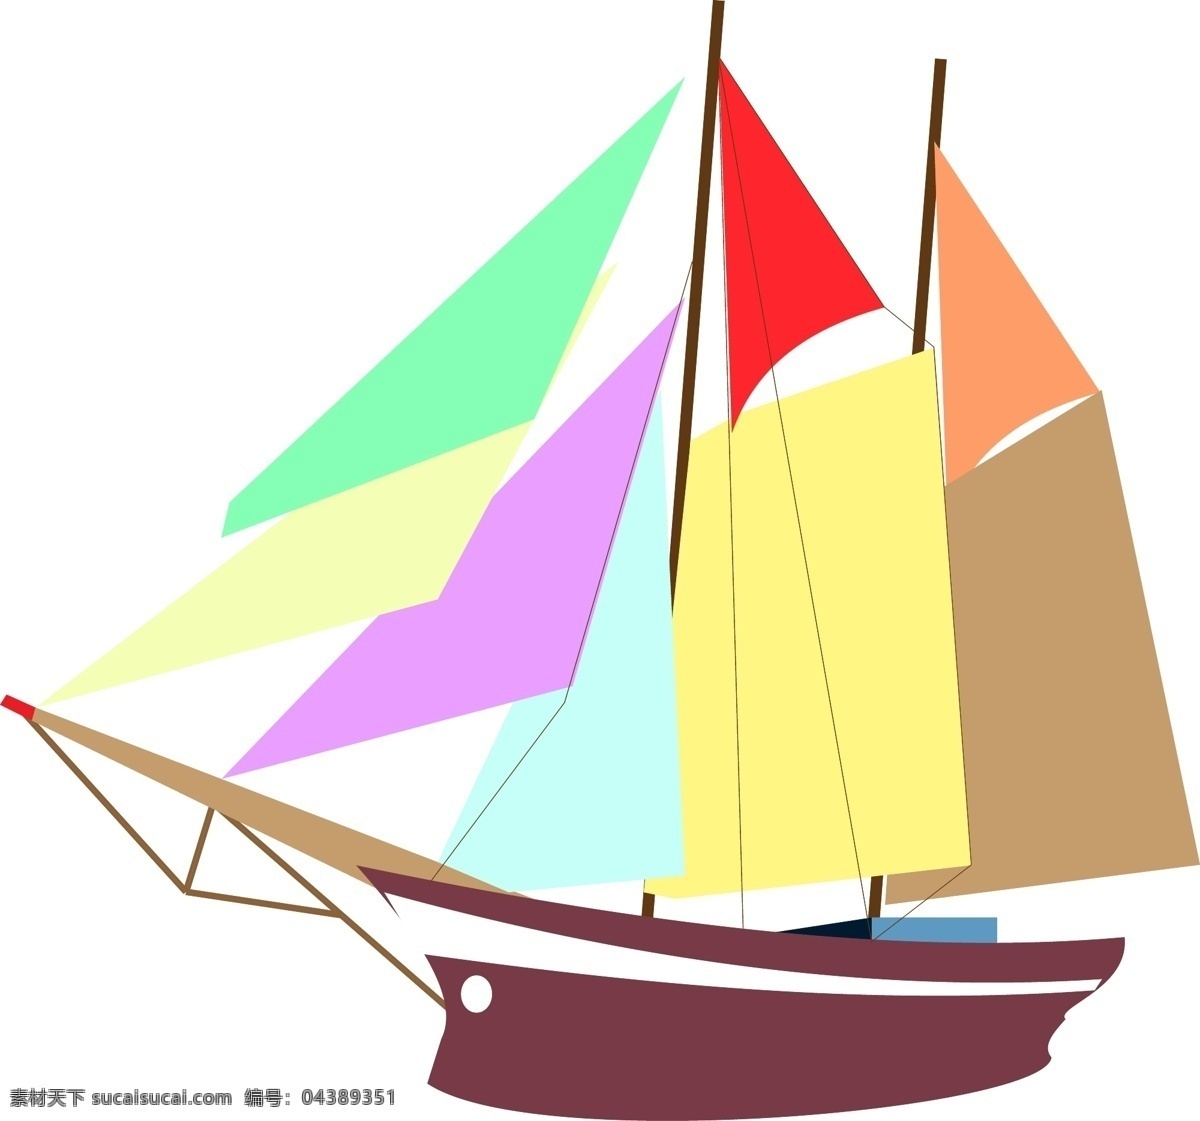 交通工具帆船 帆船 工具 交通